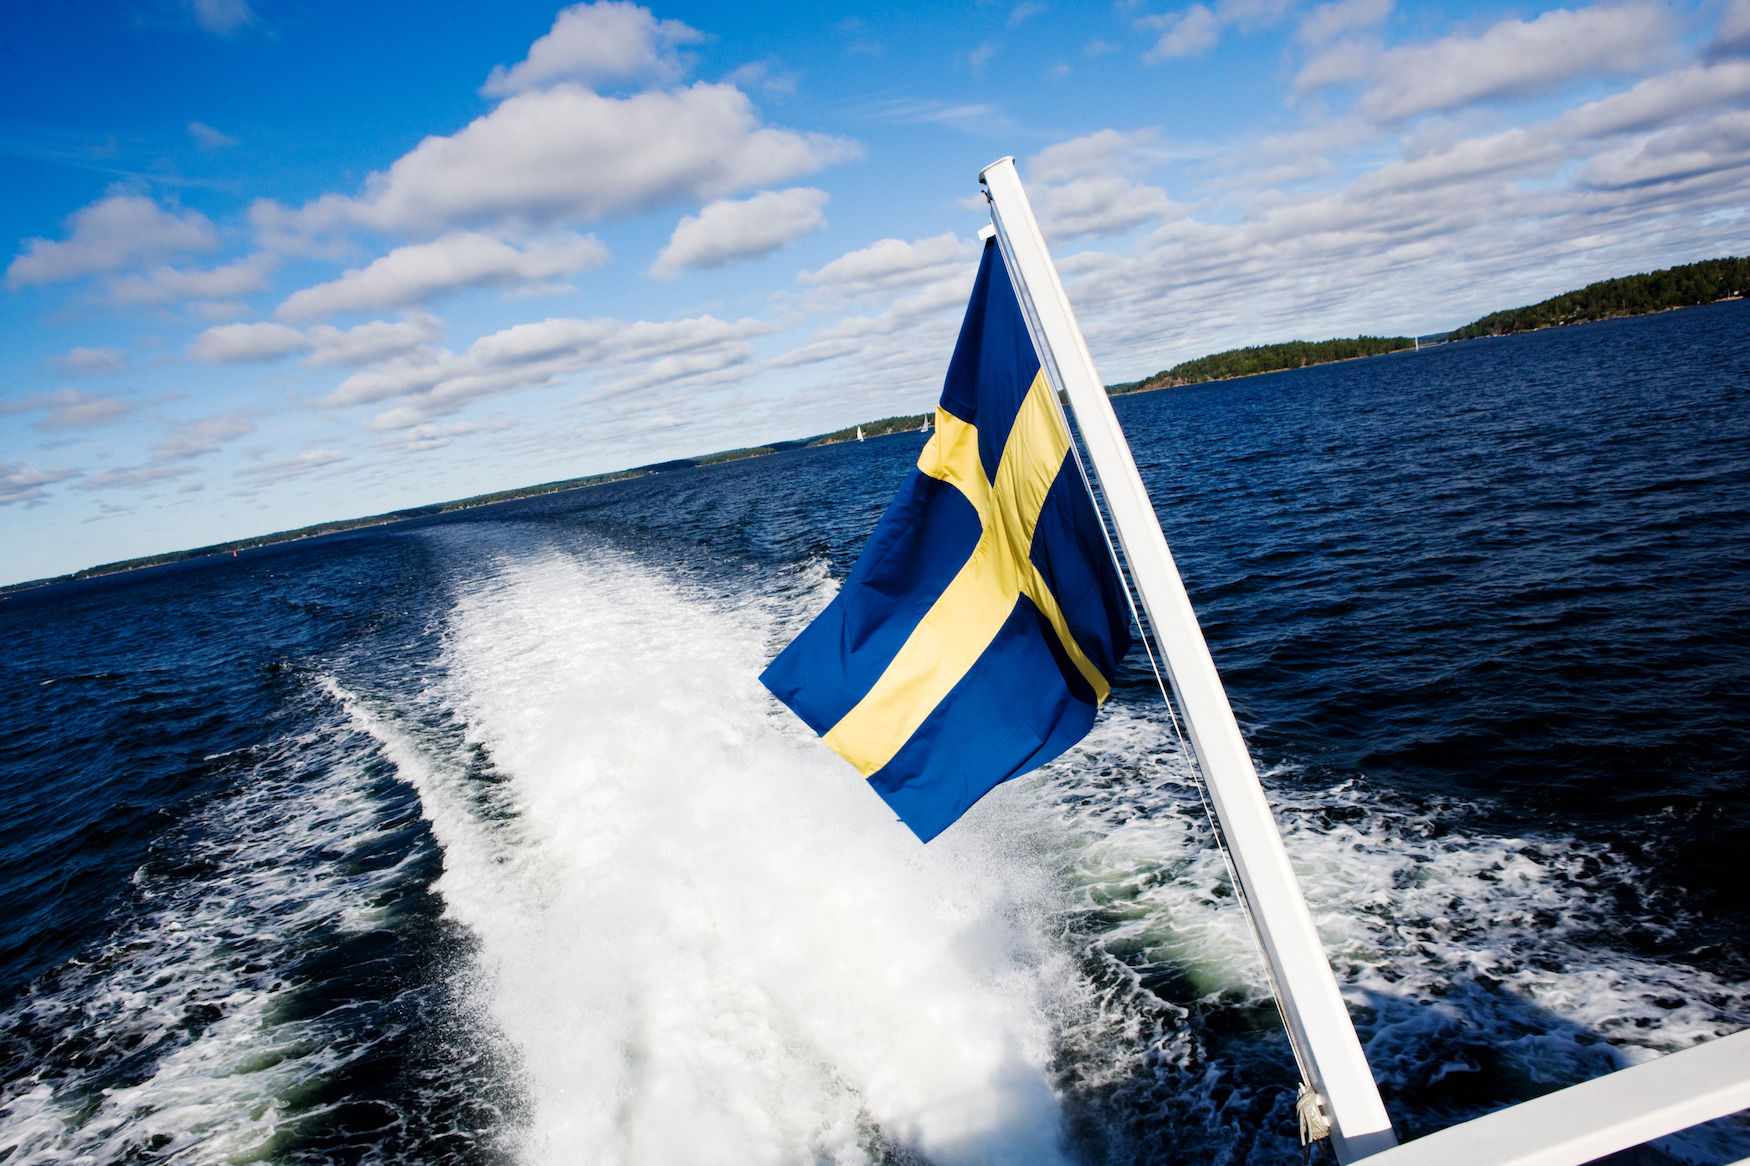 Eine Tour mit dem Schnellboot durch den Schärengarten von Stockholm gehört zu den coolsten Aktivitäten in Schweden